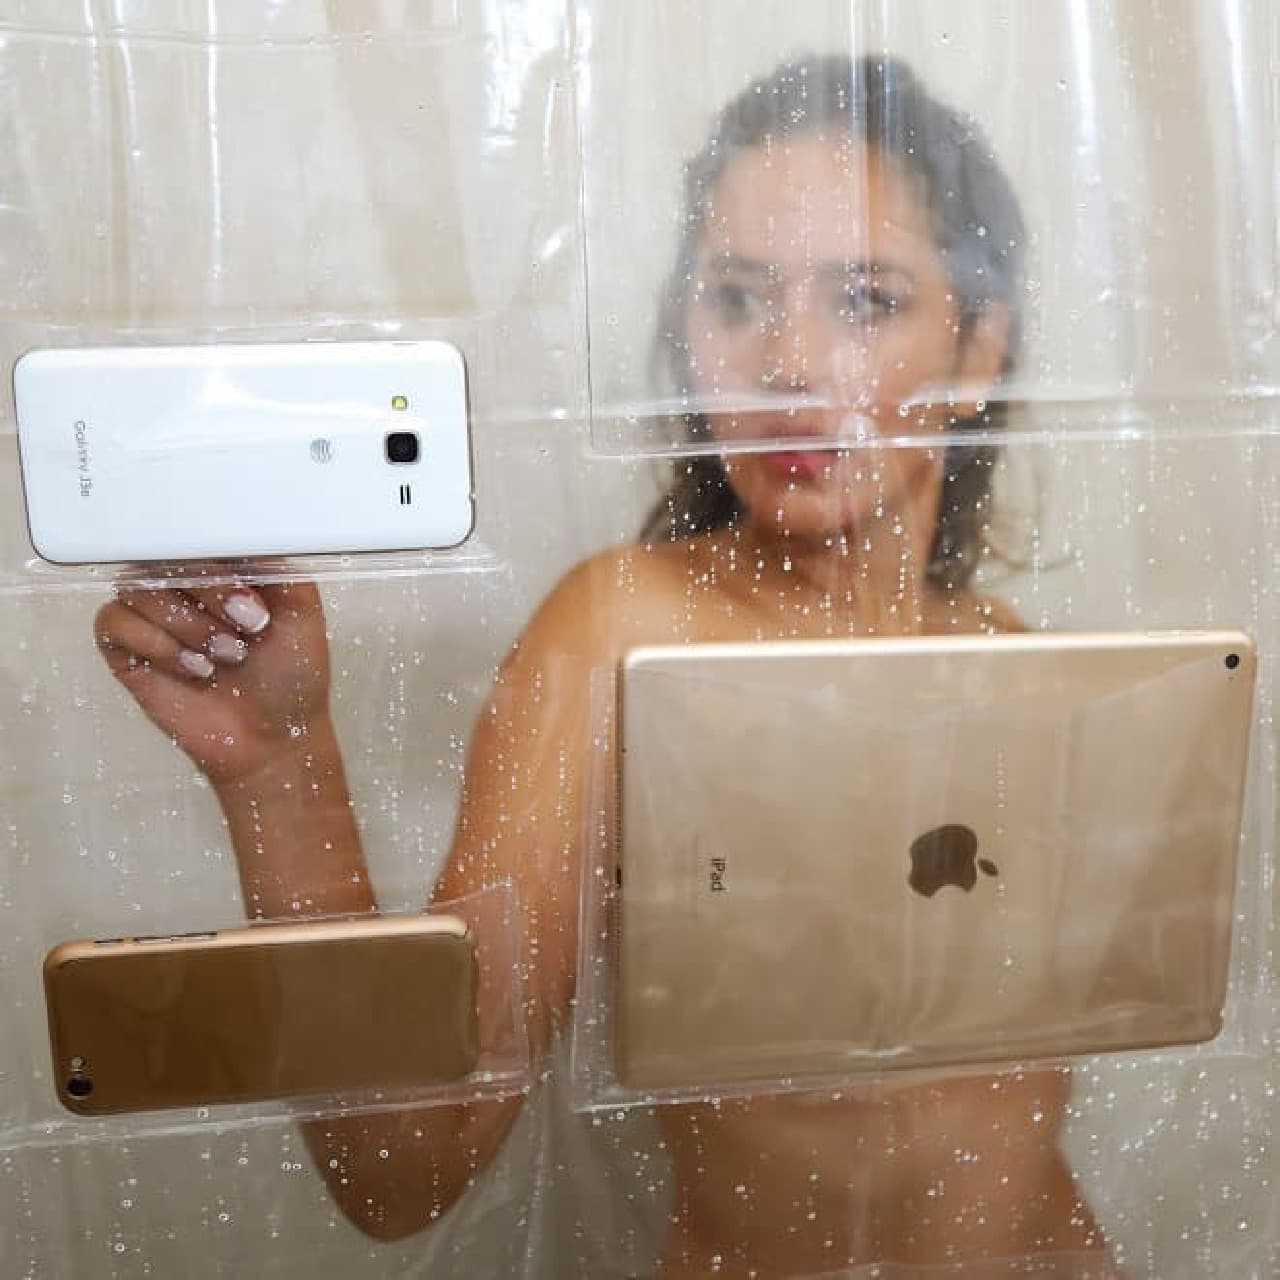 スマートフォンやタブレットを保持できるシャワーカーテン「iPad Mount Clear Shower Curtain」